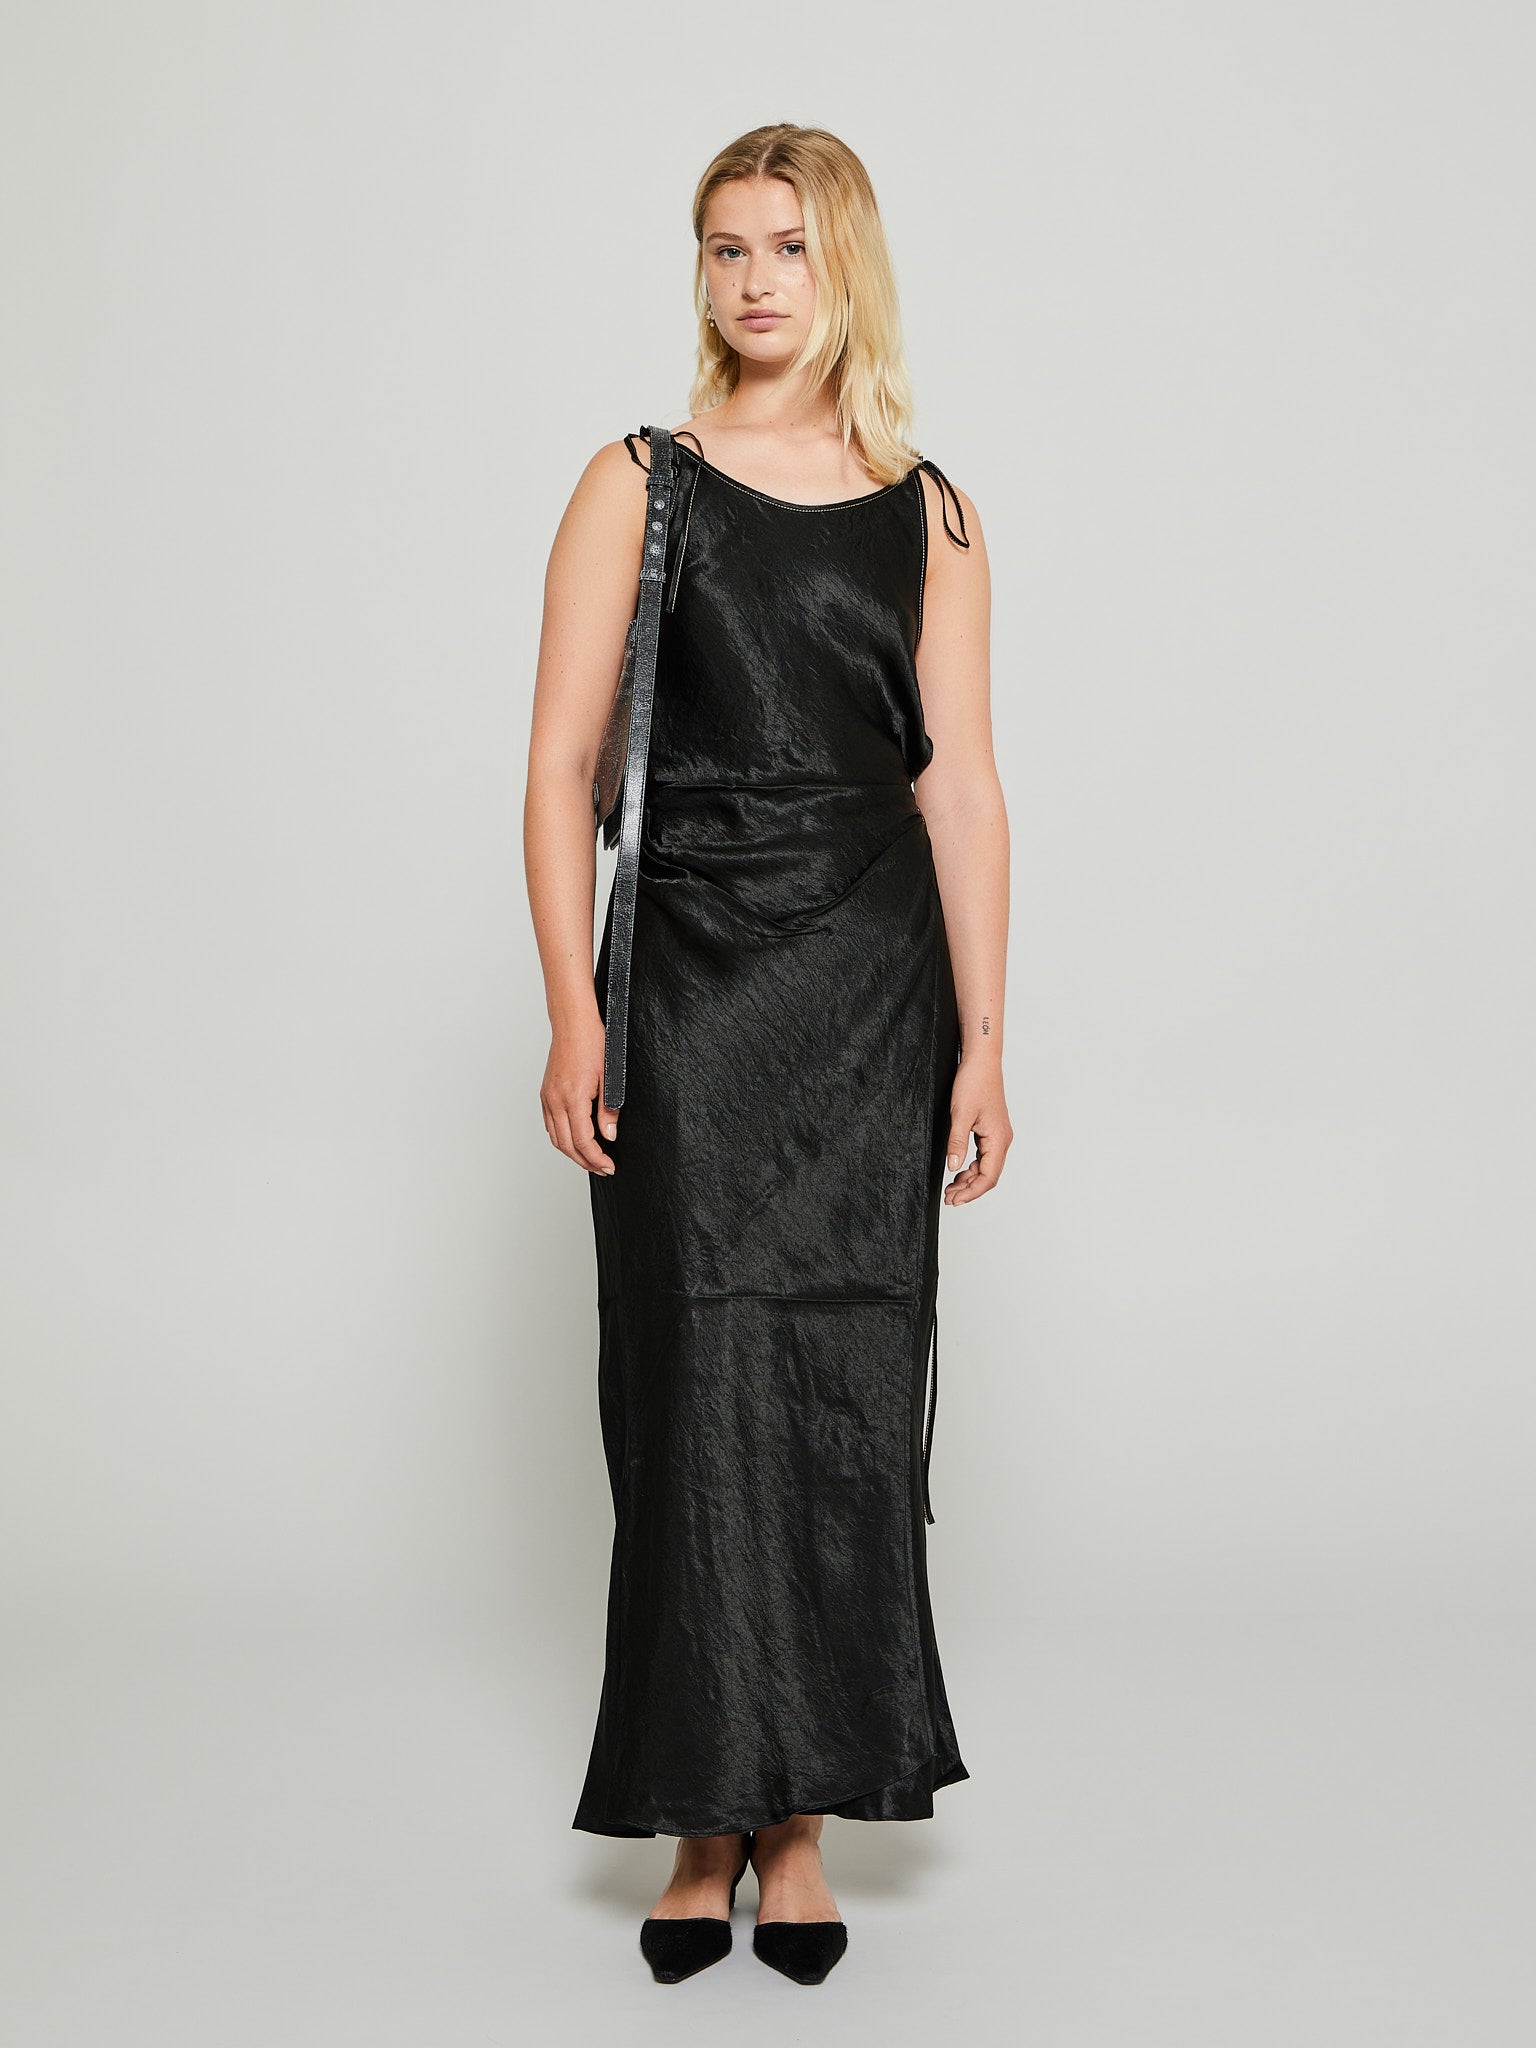 Satin Strap Dress in Black